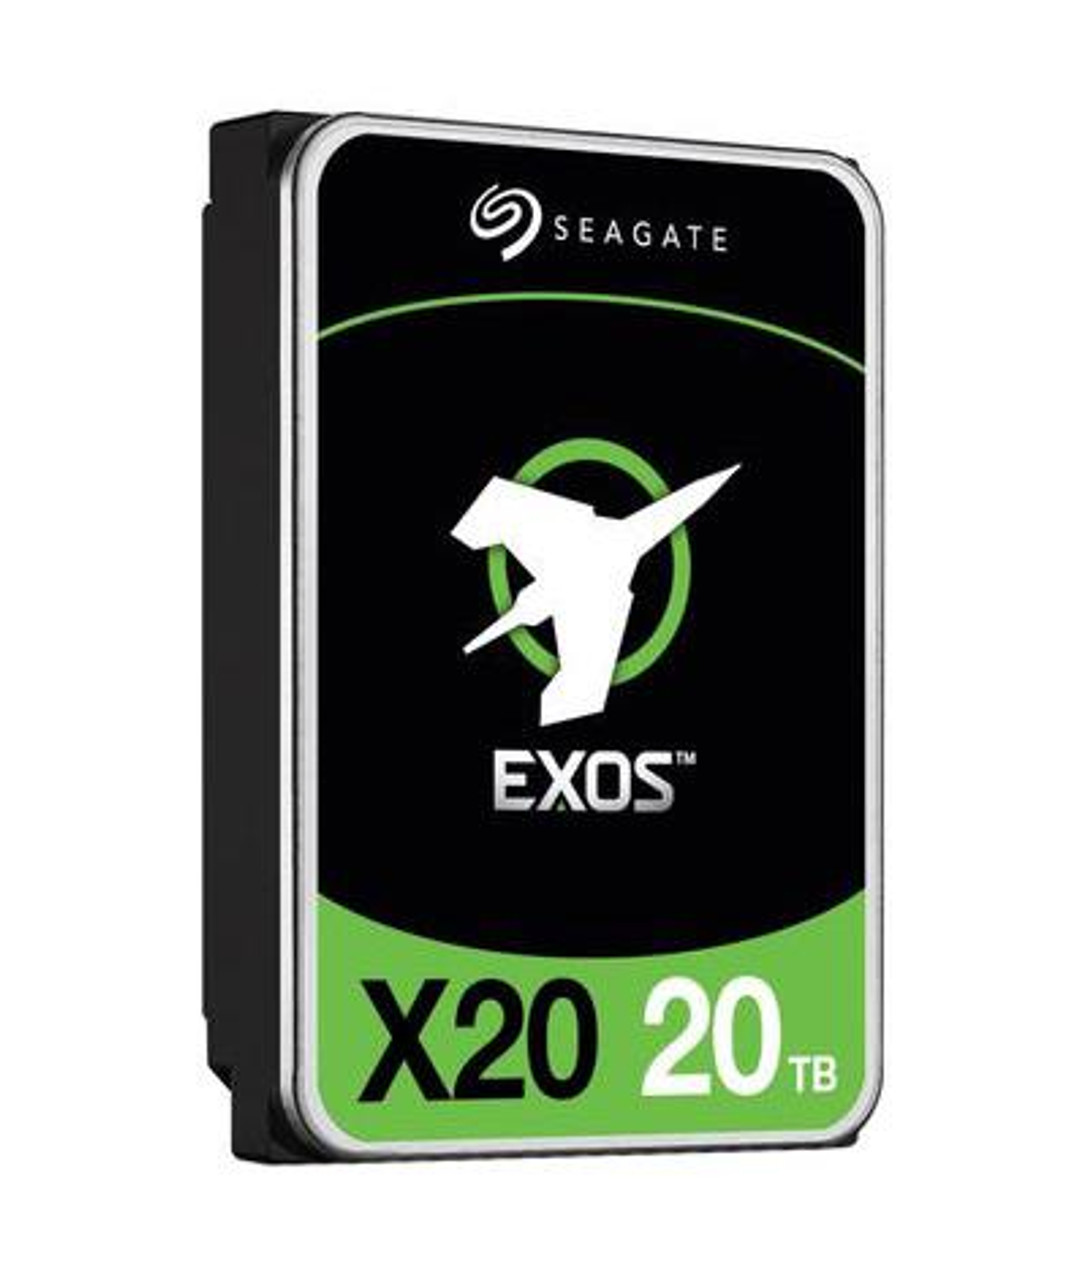 Seagate Exos X20 Series 20TB 7200RPM SATA 6Gbps (512e/4kn) 3.5-inch Hard Disk Drive